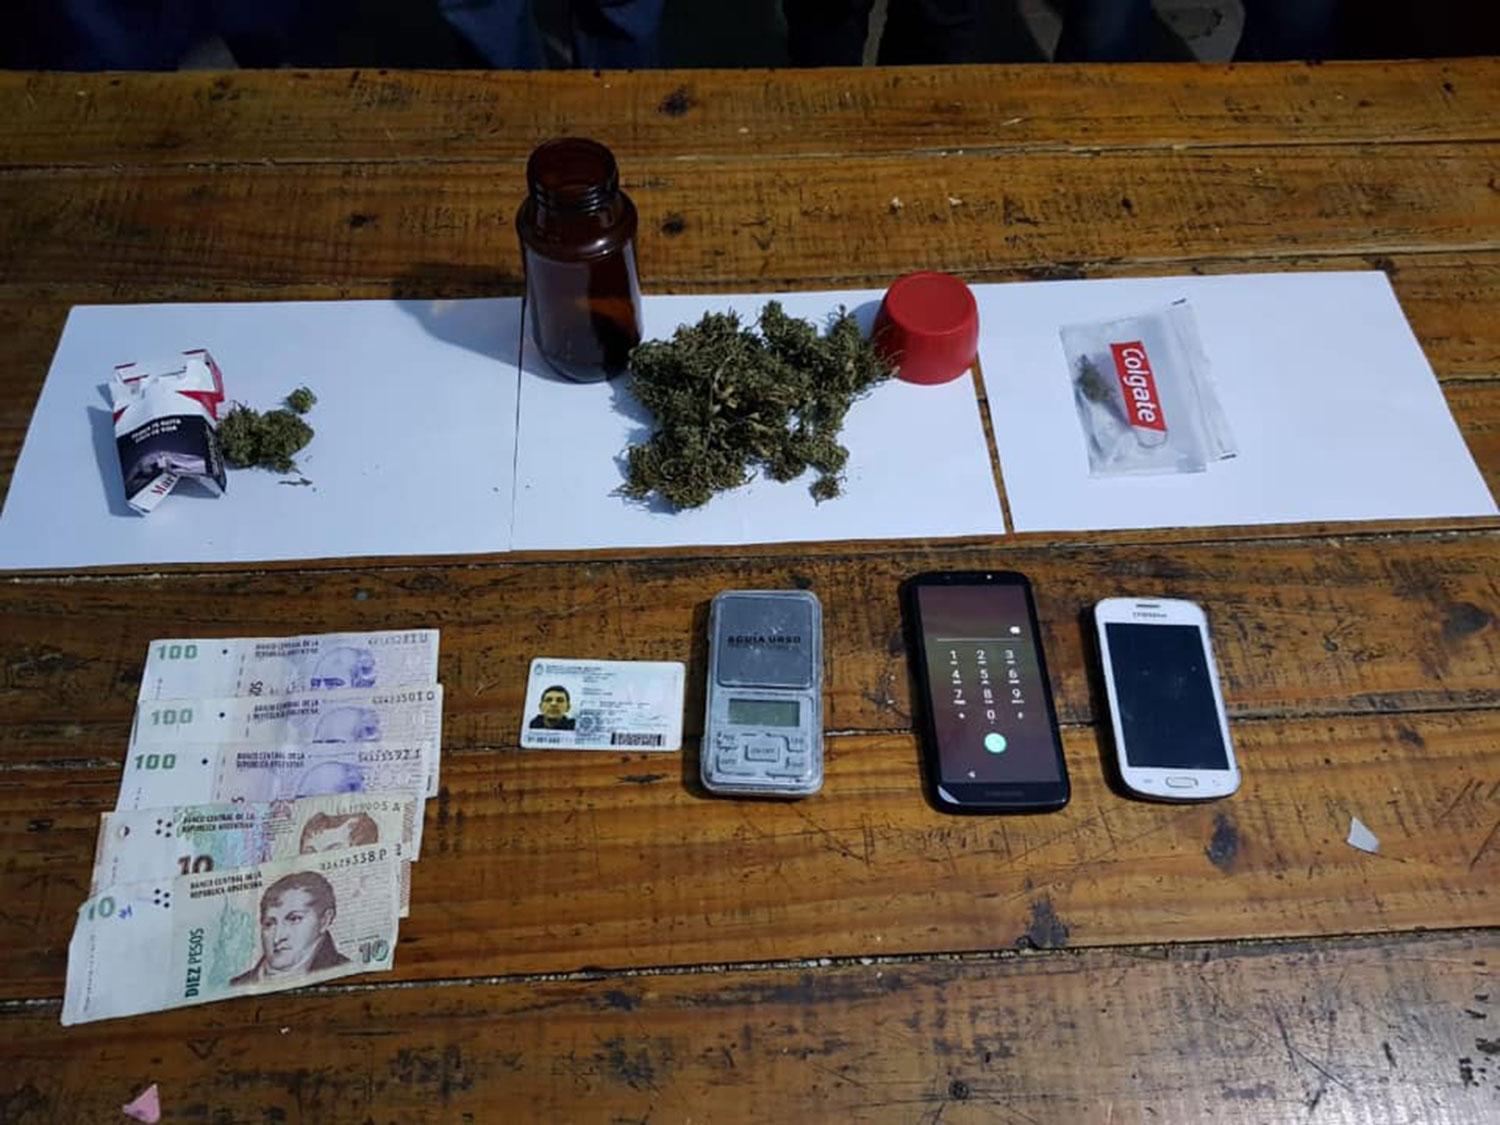 Droga, dinero, celulares y más: la policía incautó de todo durante el fin de semana